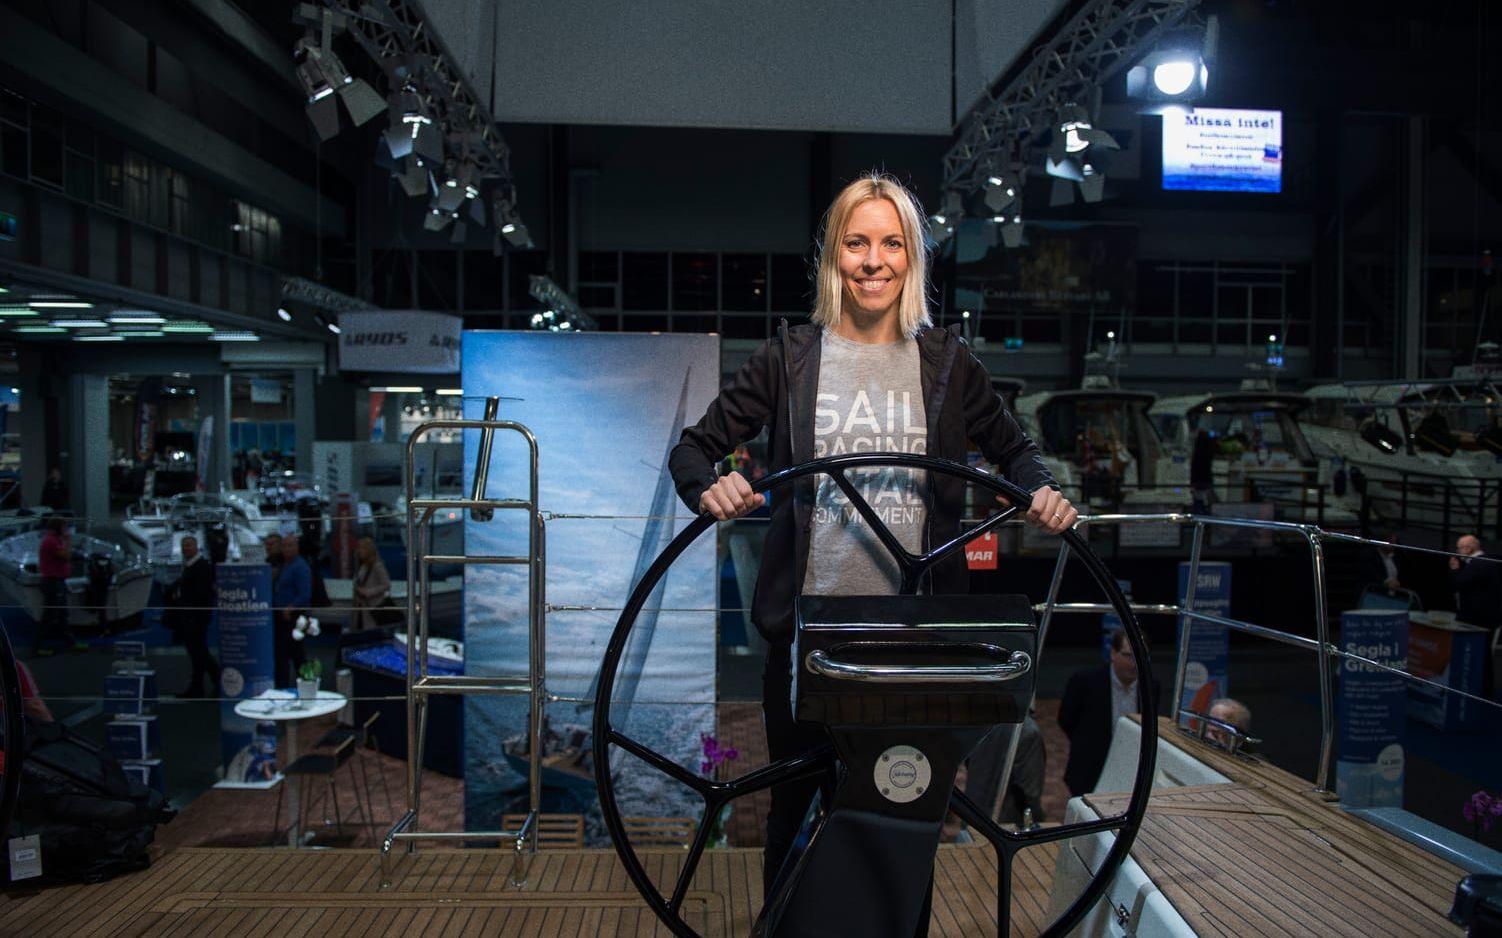 Anna Östling hoppas att det snart ska bli lika självklart för sponsorer att satsa på tjejer som på killar inom seglingen. Foto: Oliver Lindkvist.